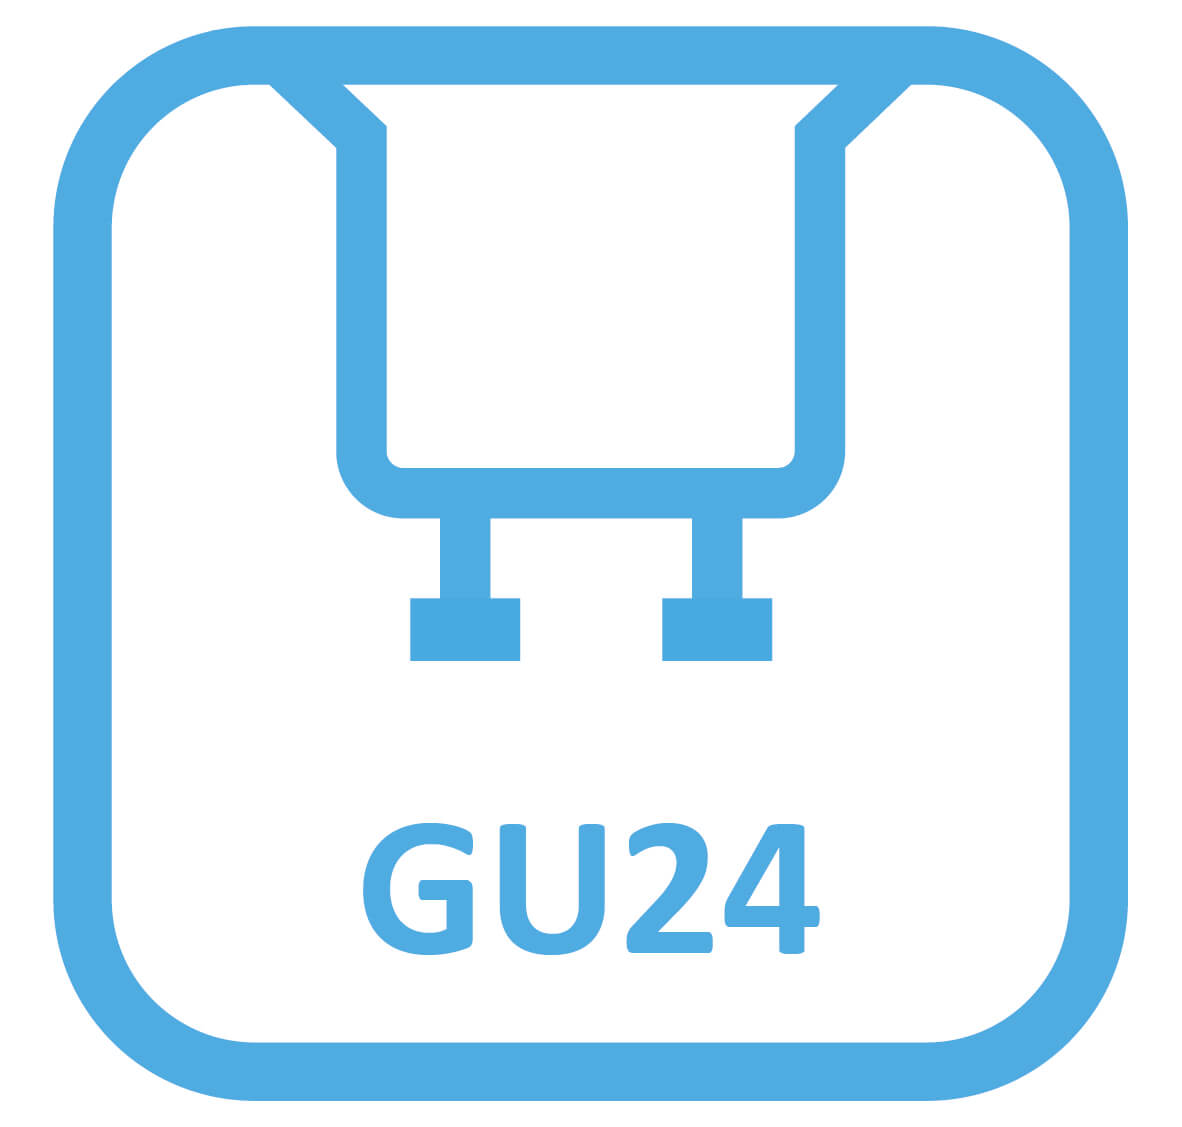 GU24